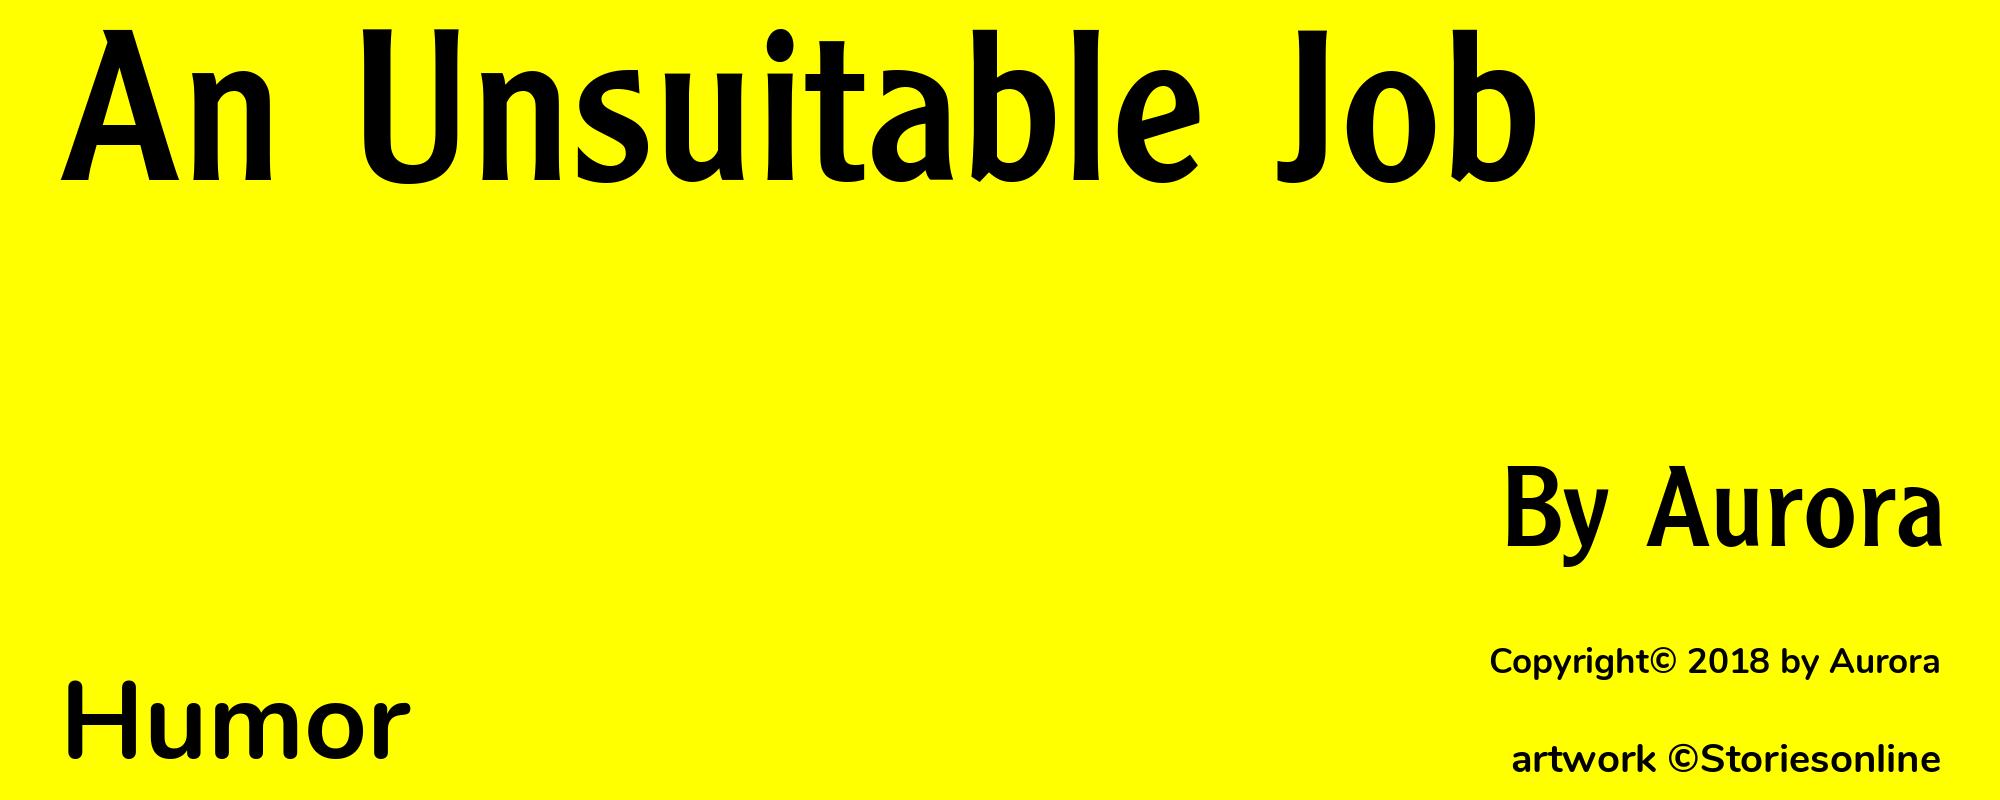 An Unsuitable Job - Cover